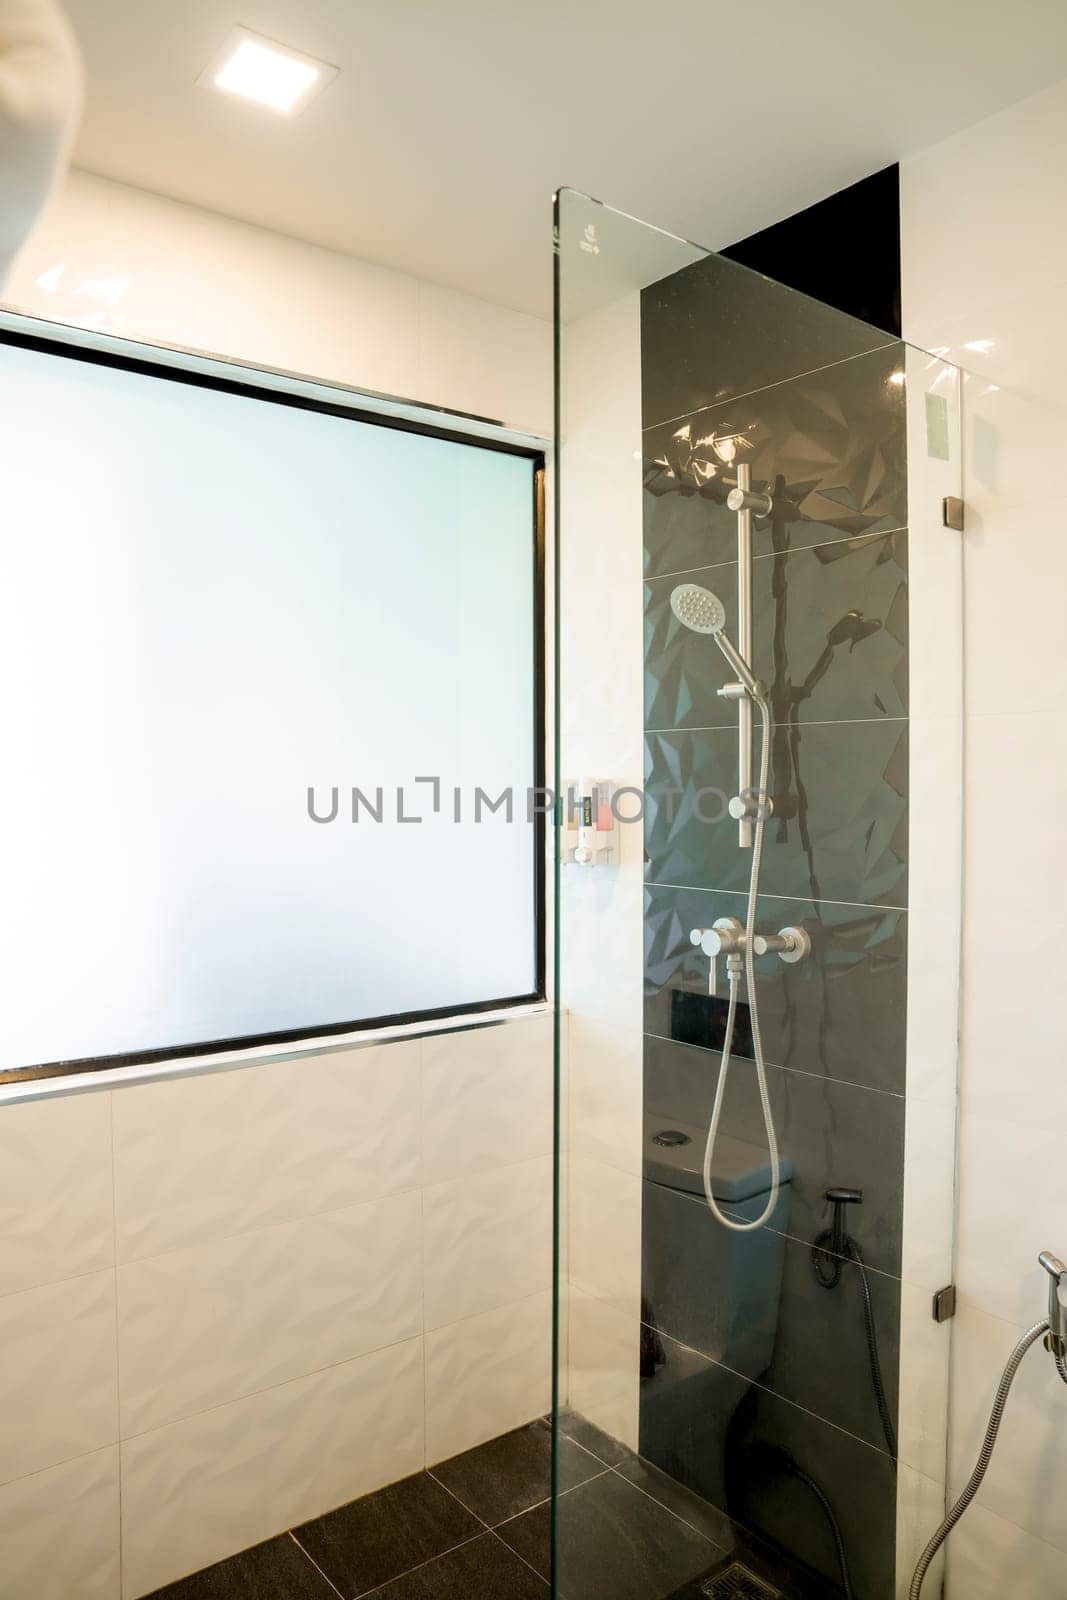 A minimalistic bathroom and shower by Gamjai